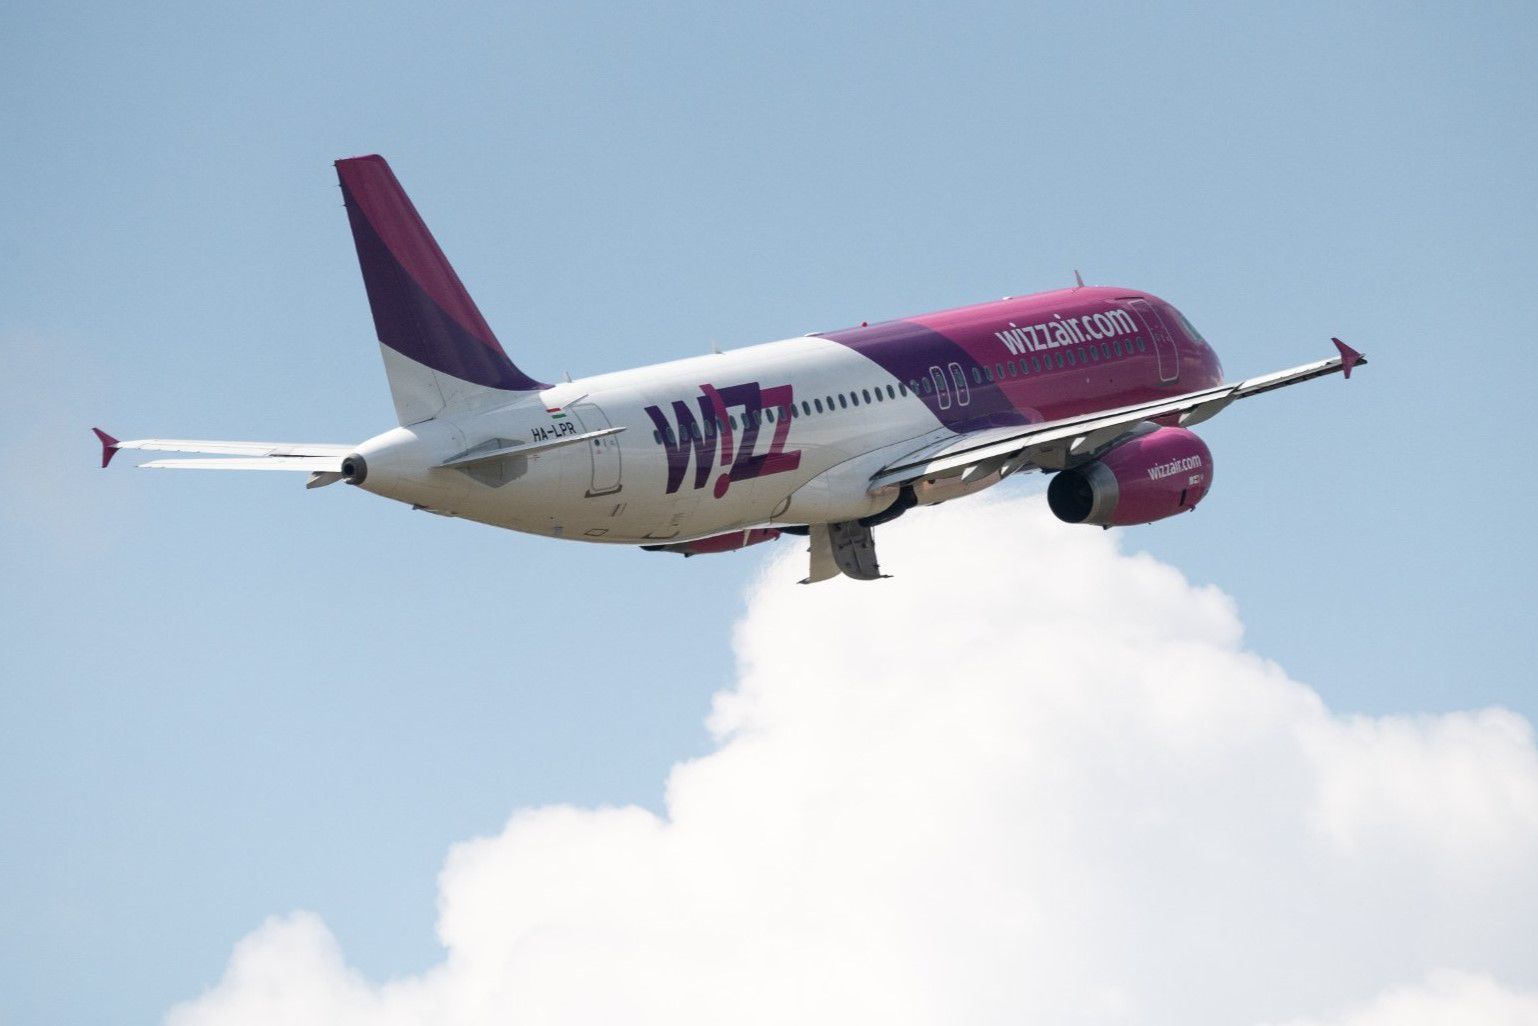 A Wizz Air törölte a Debrecen–London és a London–Debrecen járatait